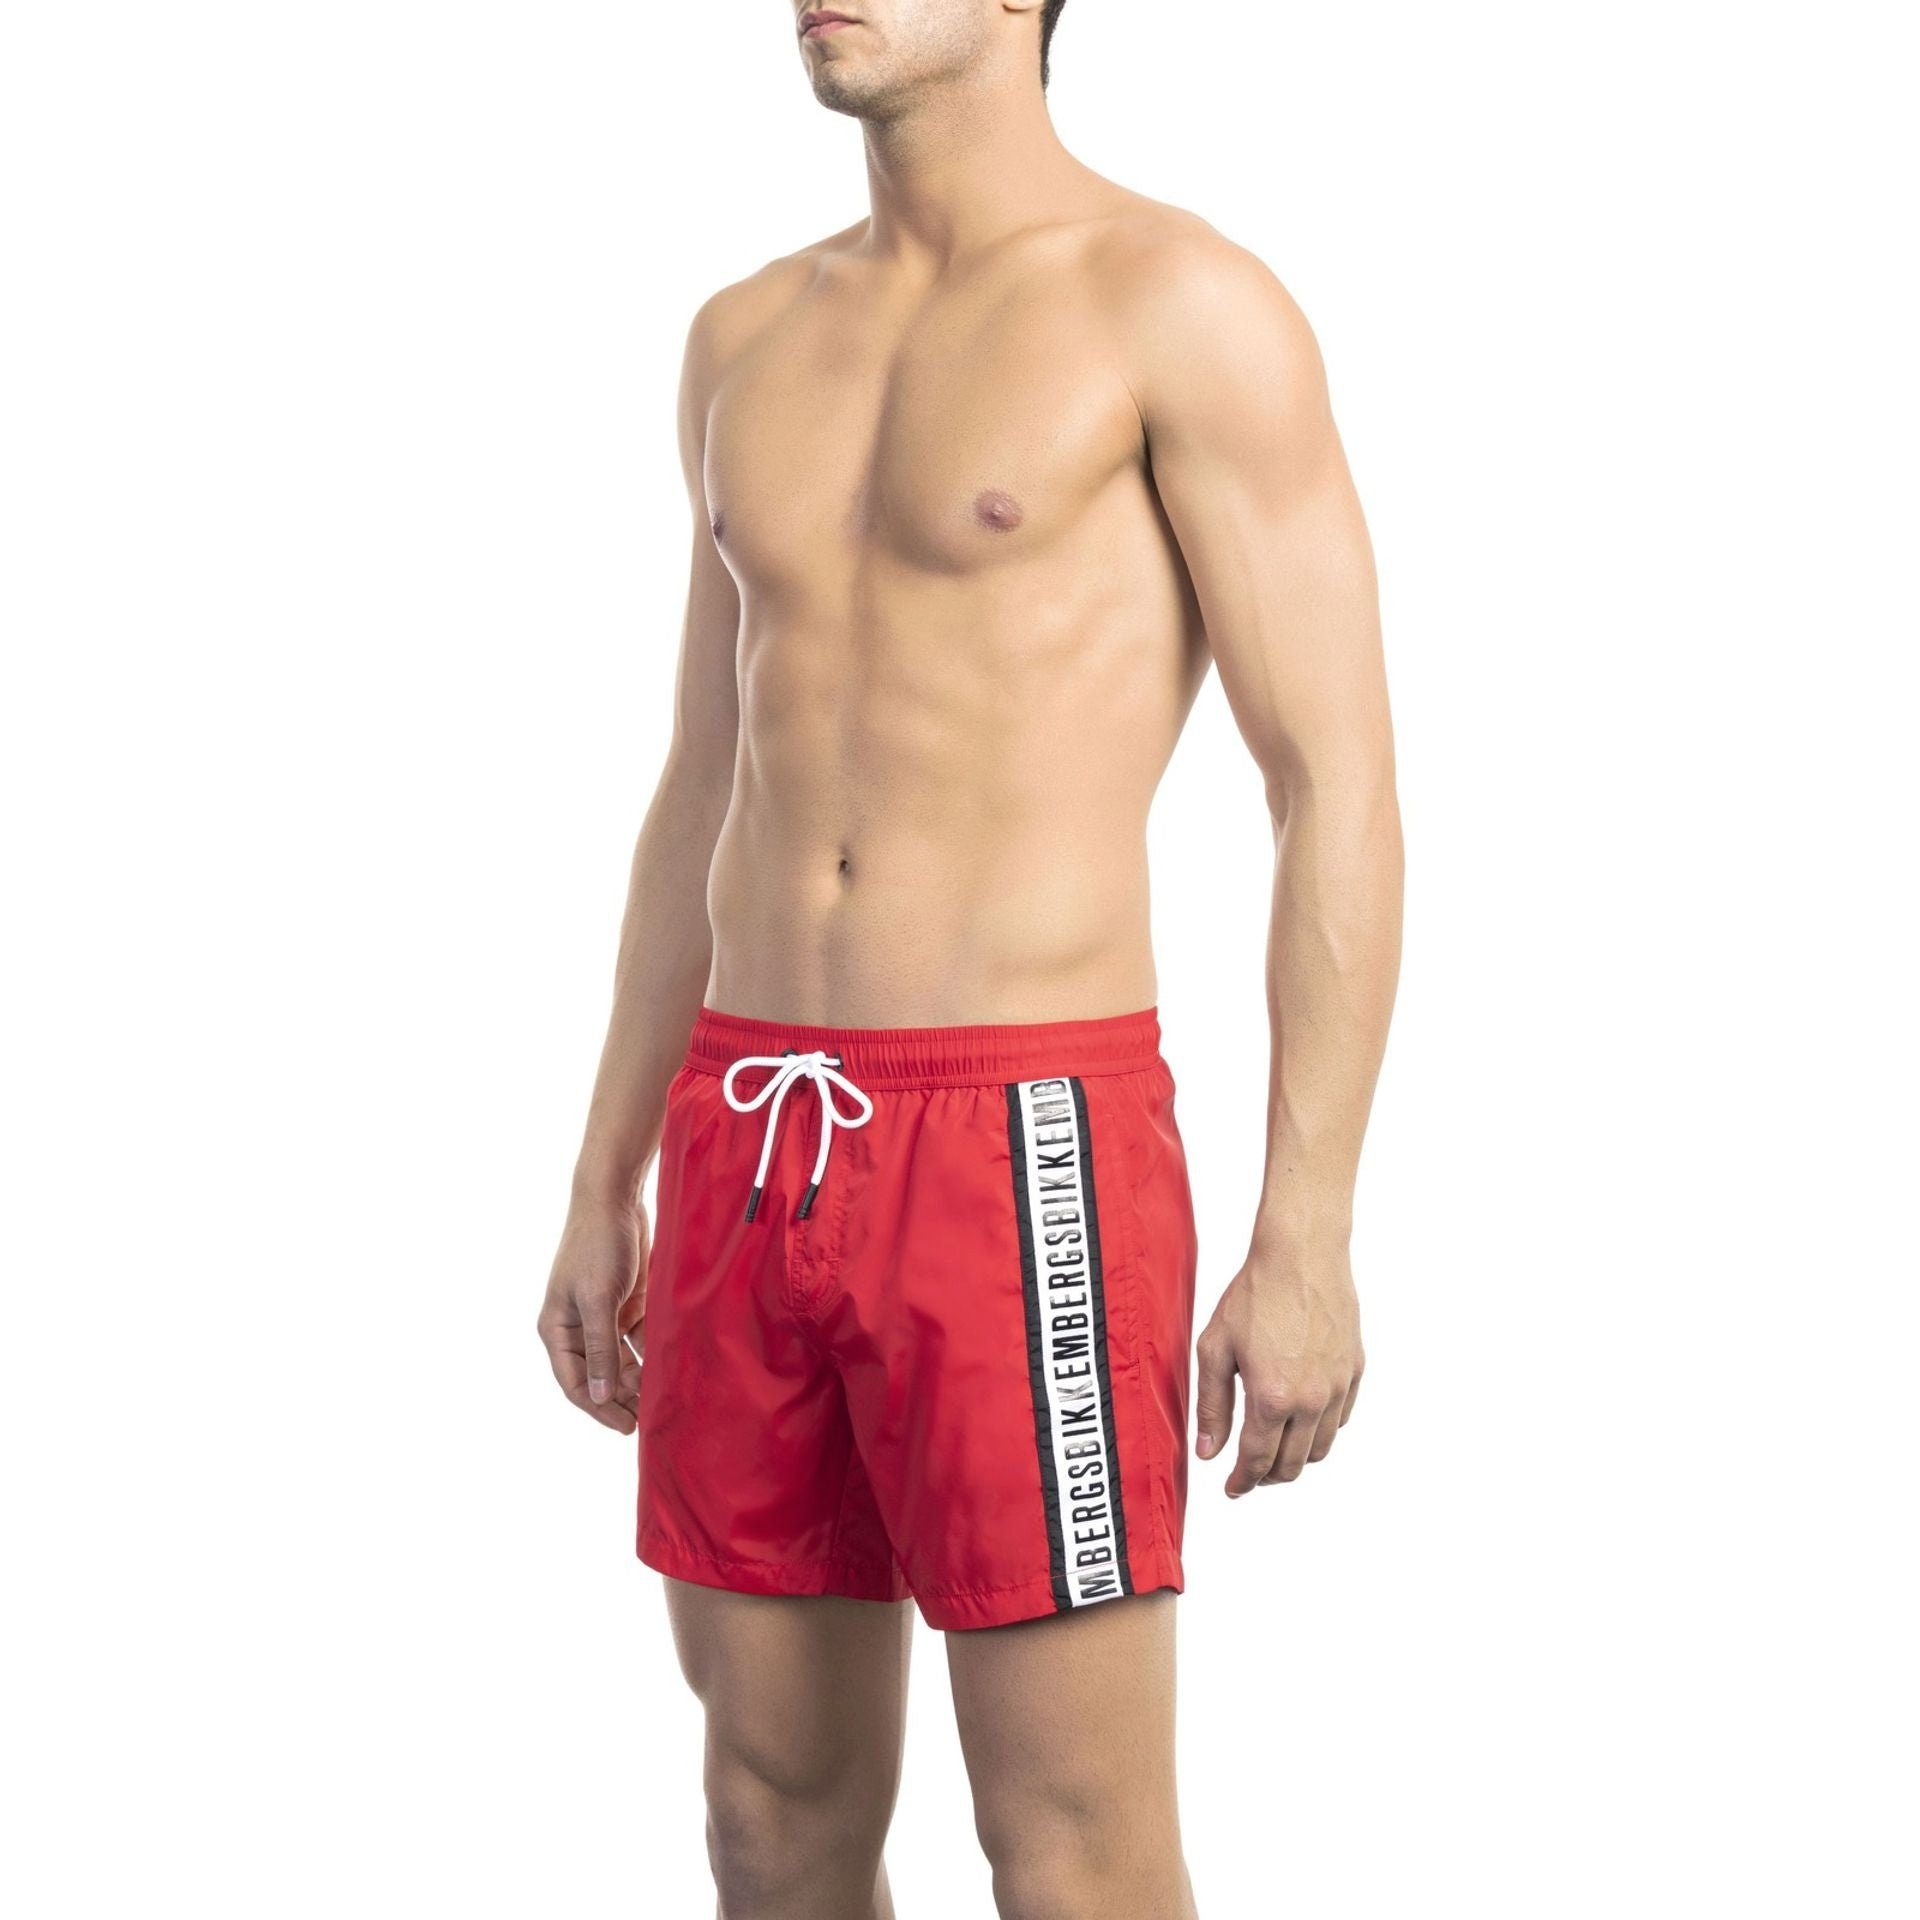 Boxer-Badehose Rot Bikkembergs Must-Have Beachwear, deinen Boxershorts, für Bikkembergs Herren Sommerurlaub